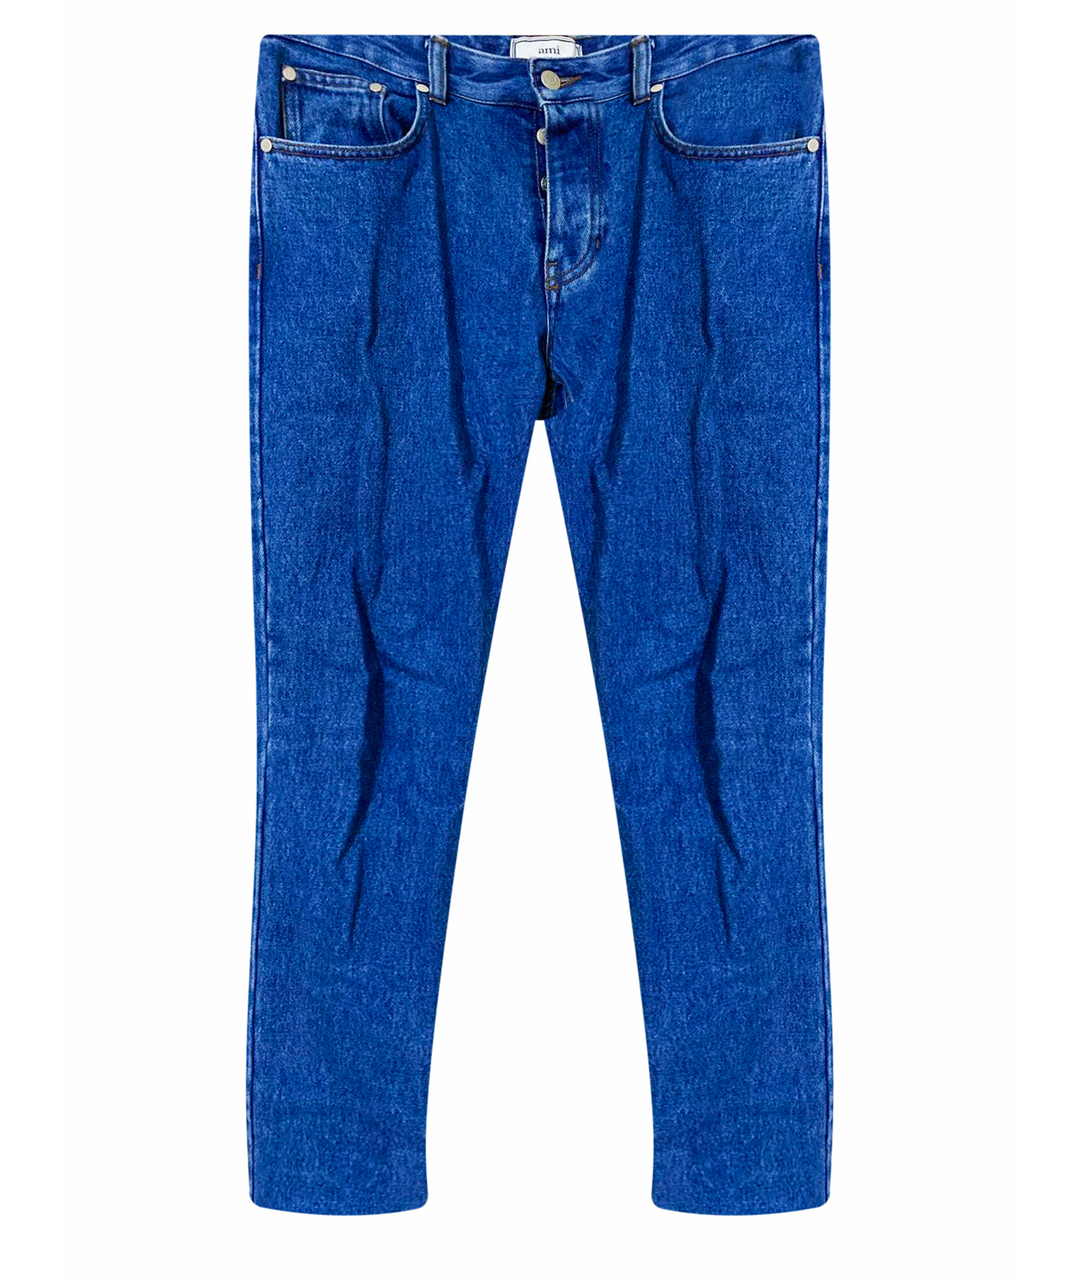 AMI Синие хлопковые джинсы скинни, фото 1